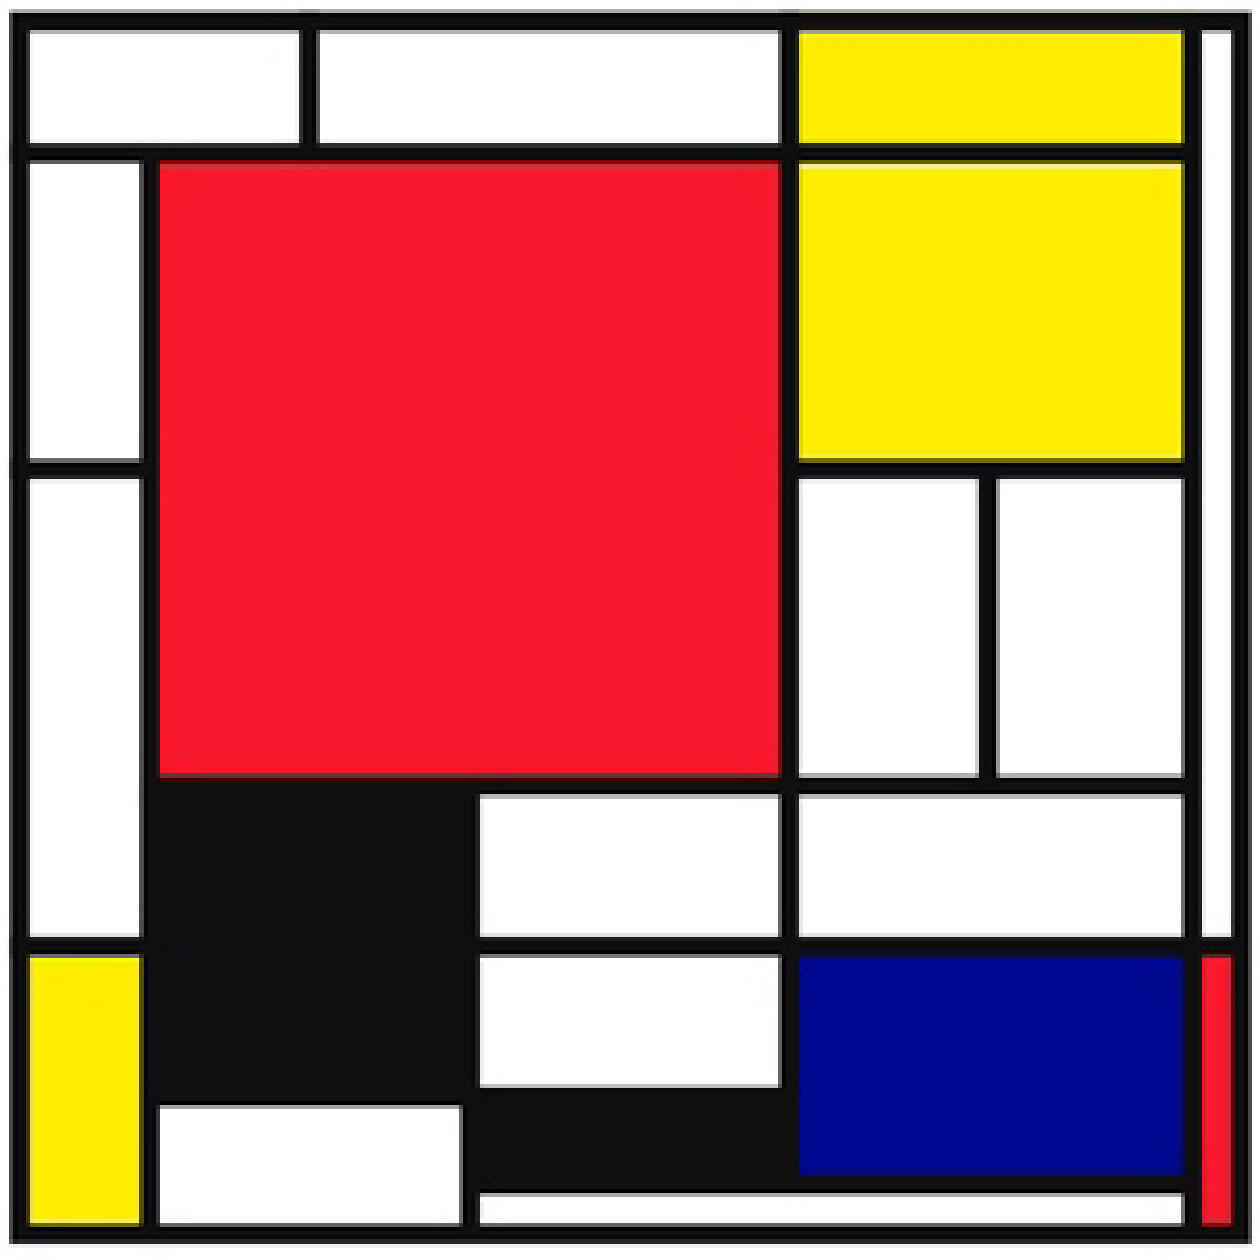 composizione rosso blu e giallo di Mondrian